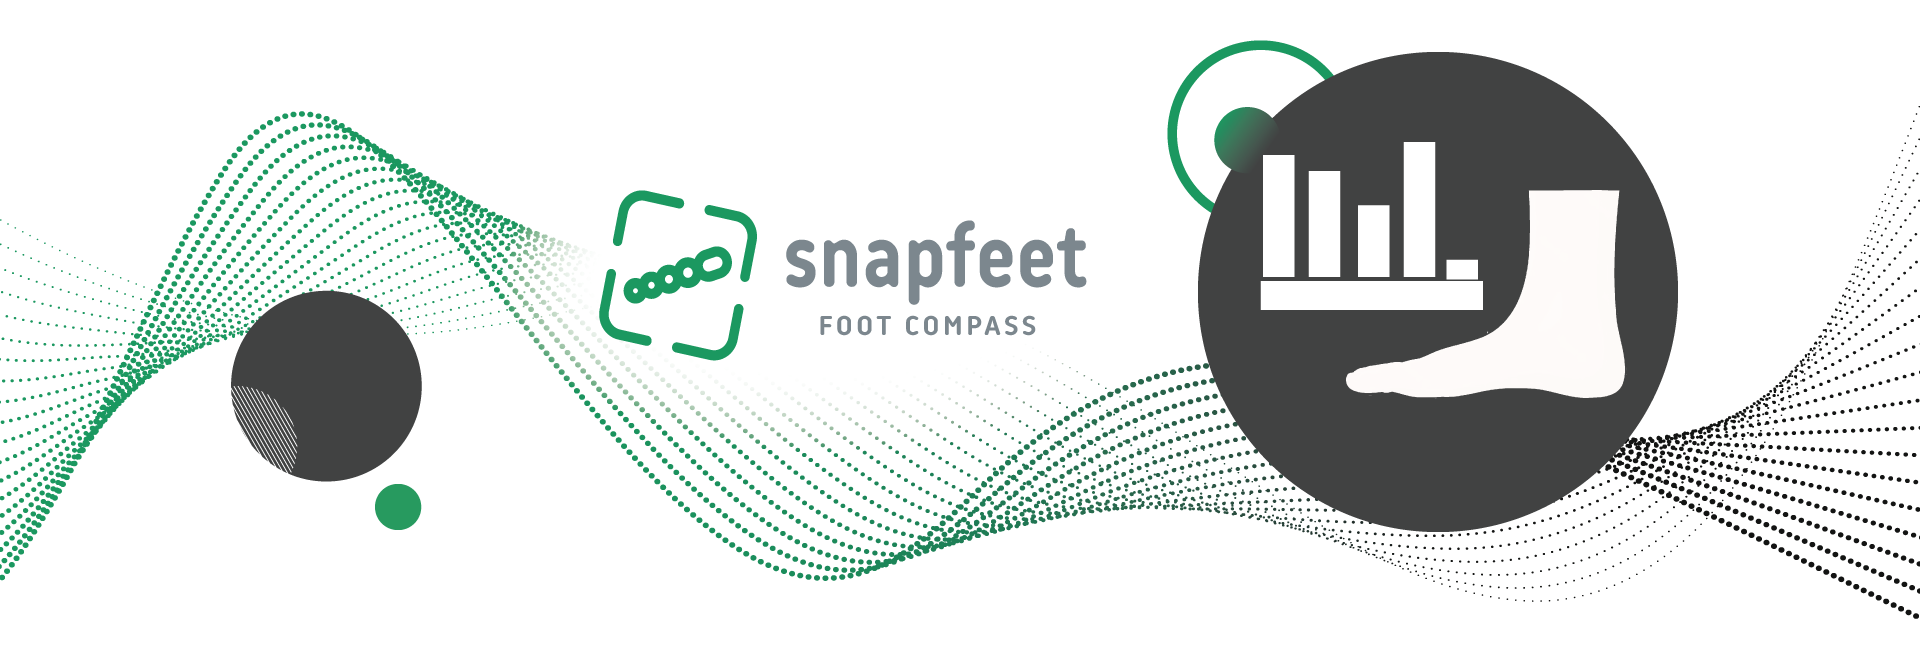 Foot Compass